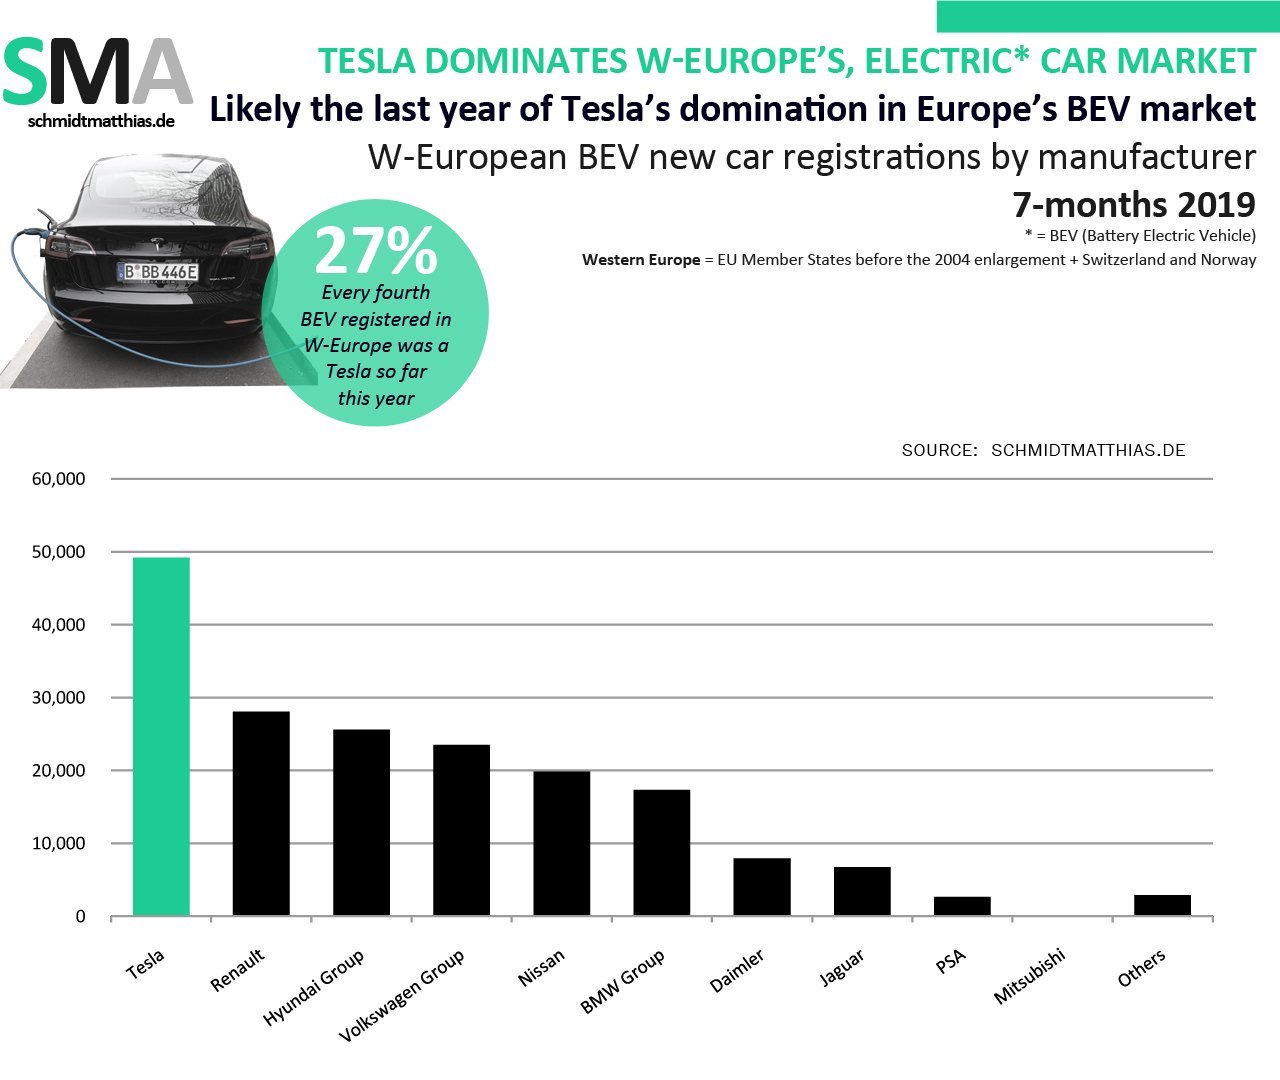 ventas-coches-electricos-europa